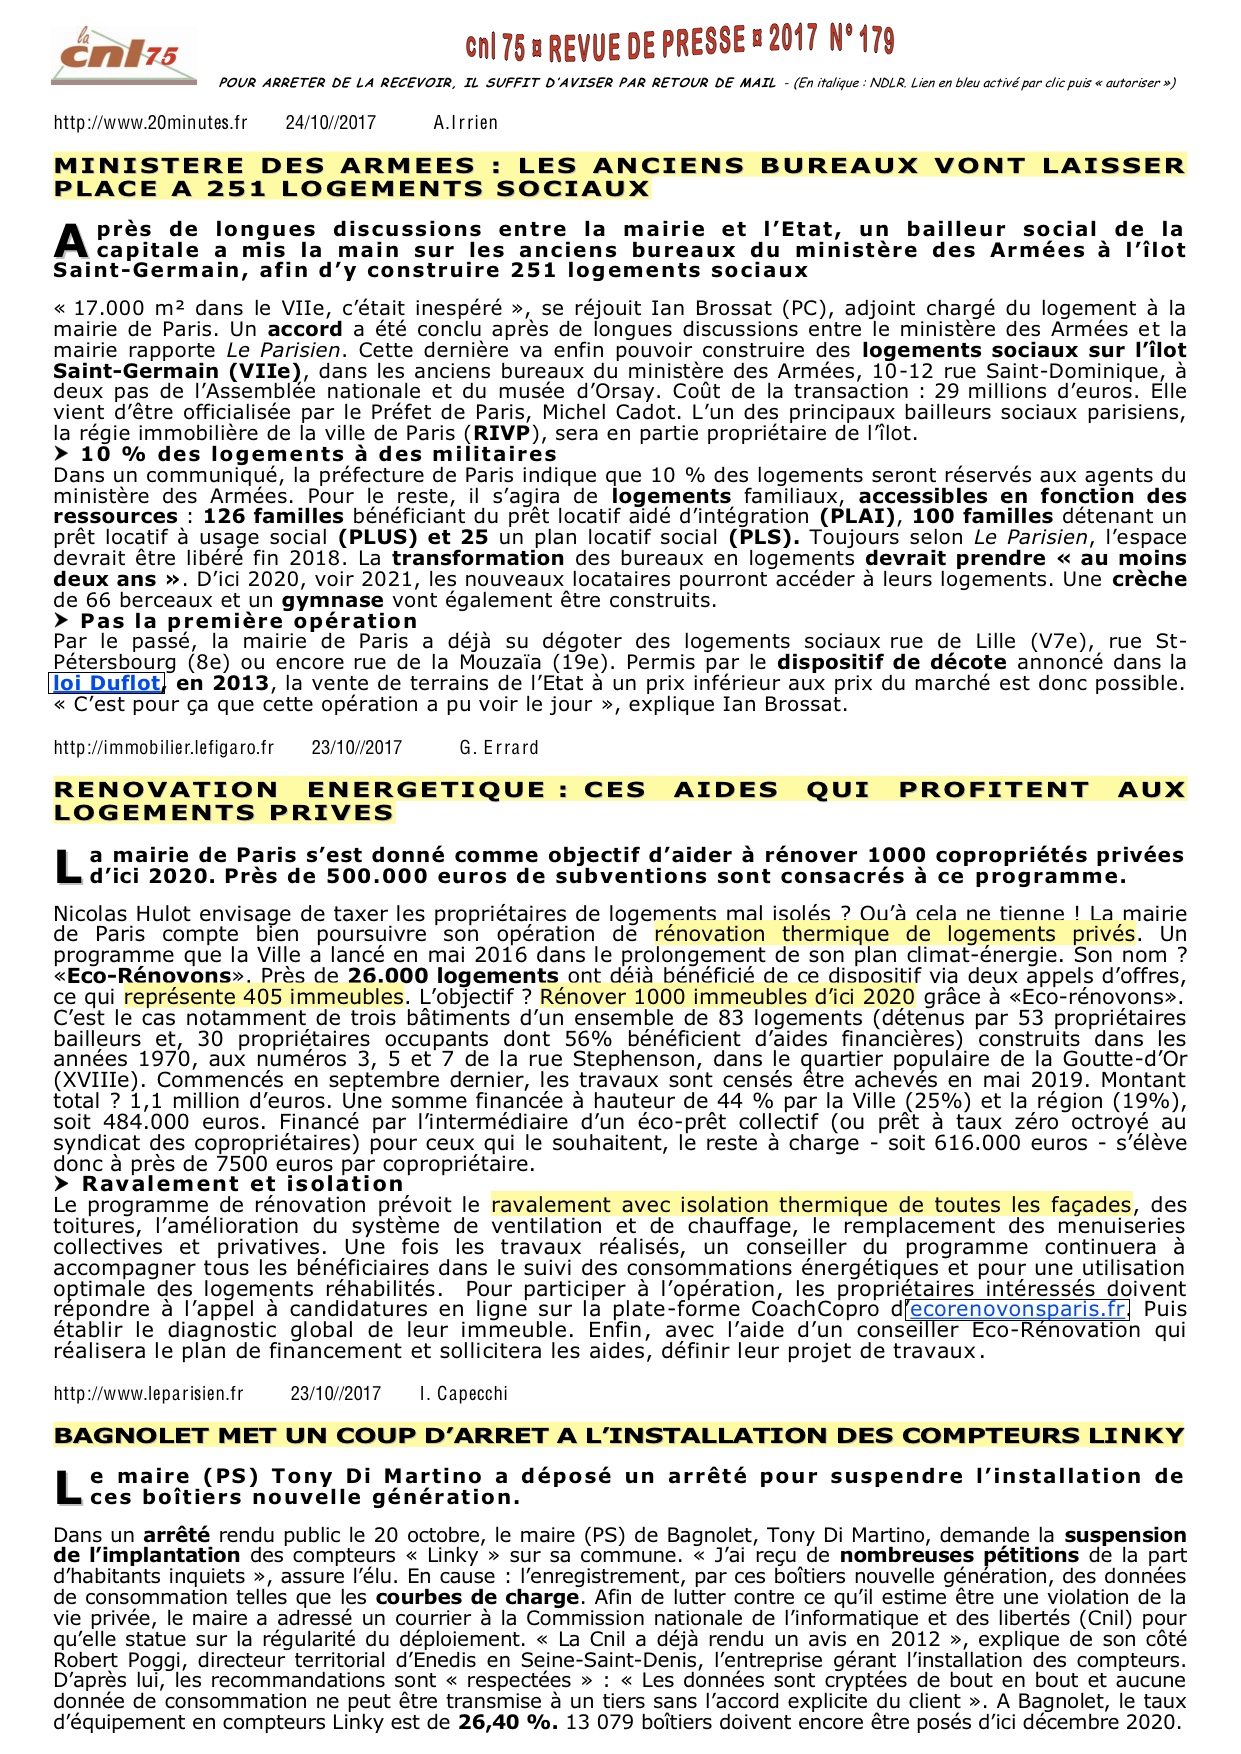 179 - PARIS _ TRANSFORMATION BUREAUX EN HLM RENOVATION ENERGETIQUE LOGEMENTS PRIVES - COMPTEURS LINKY _ ARRÊTÉ A BAGNOLET.jpg